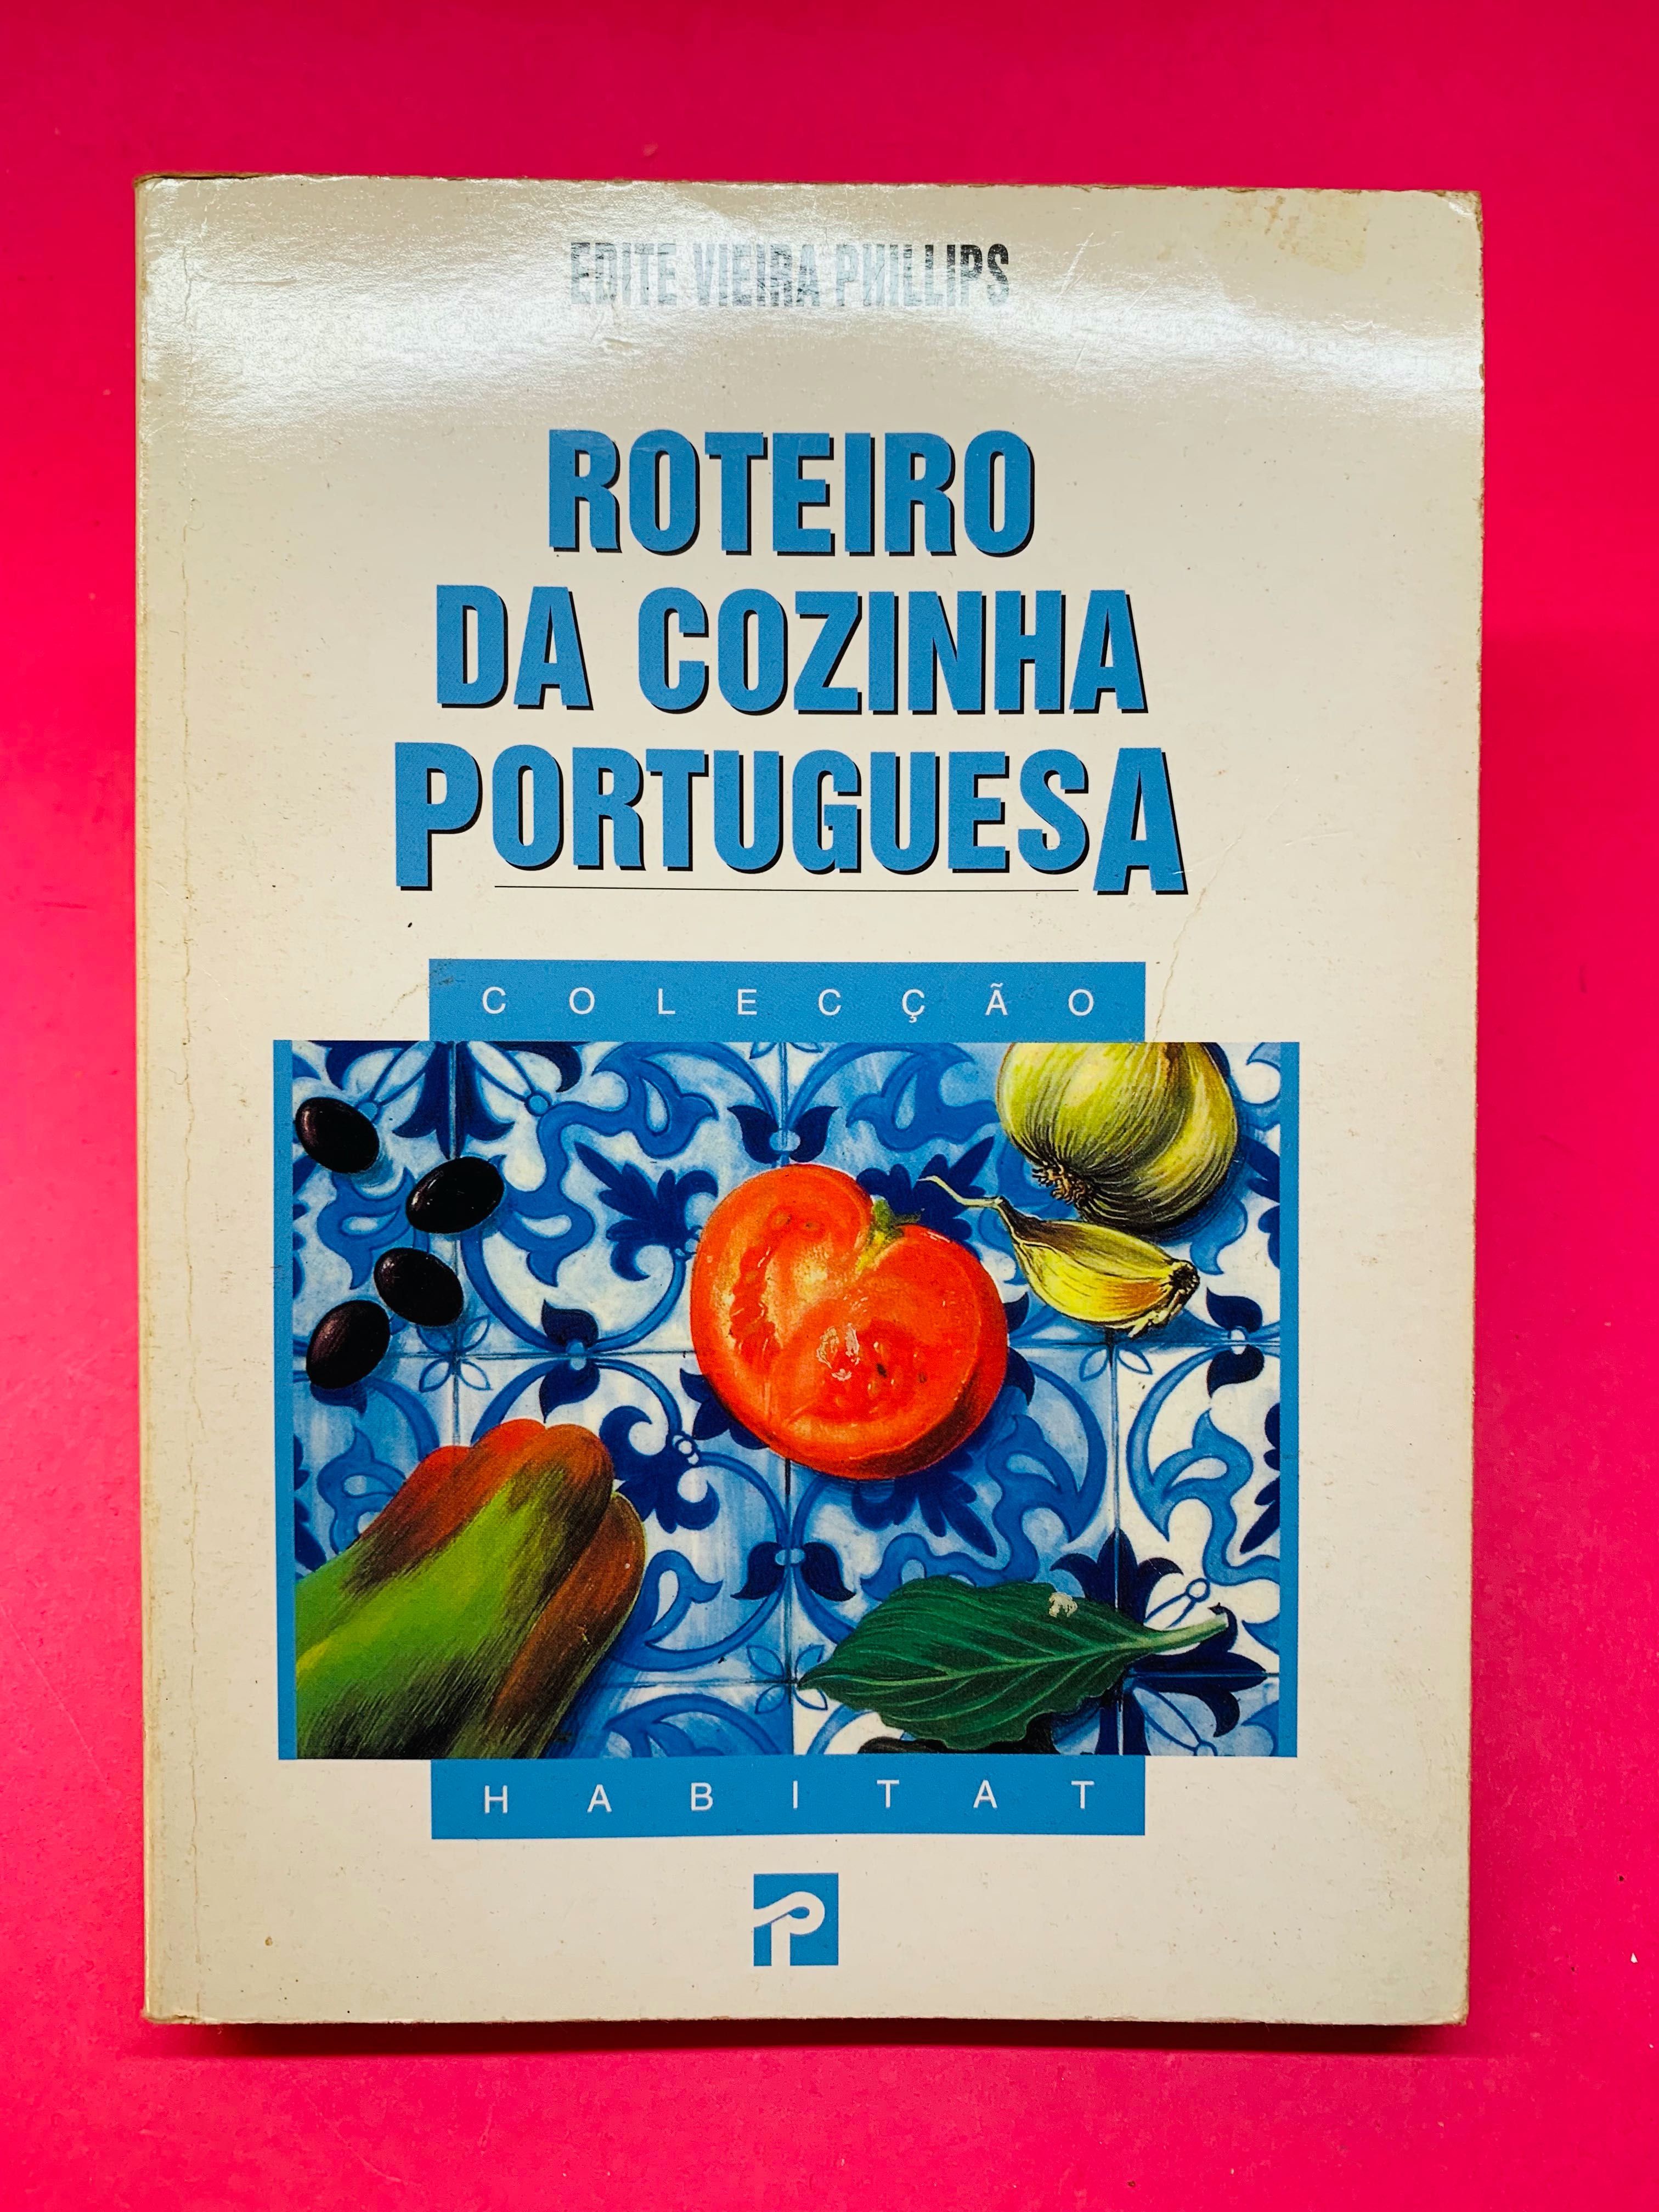 Roteiro da Cozinha Portuguesa - Edite Vieira Phillips